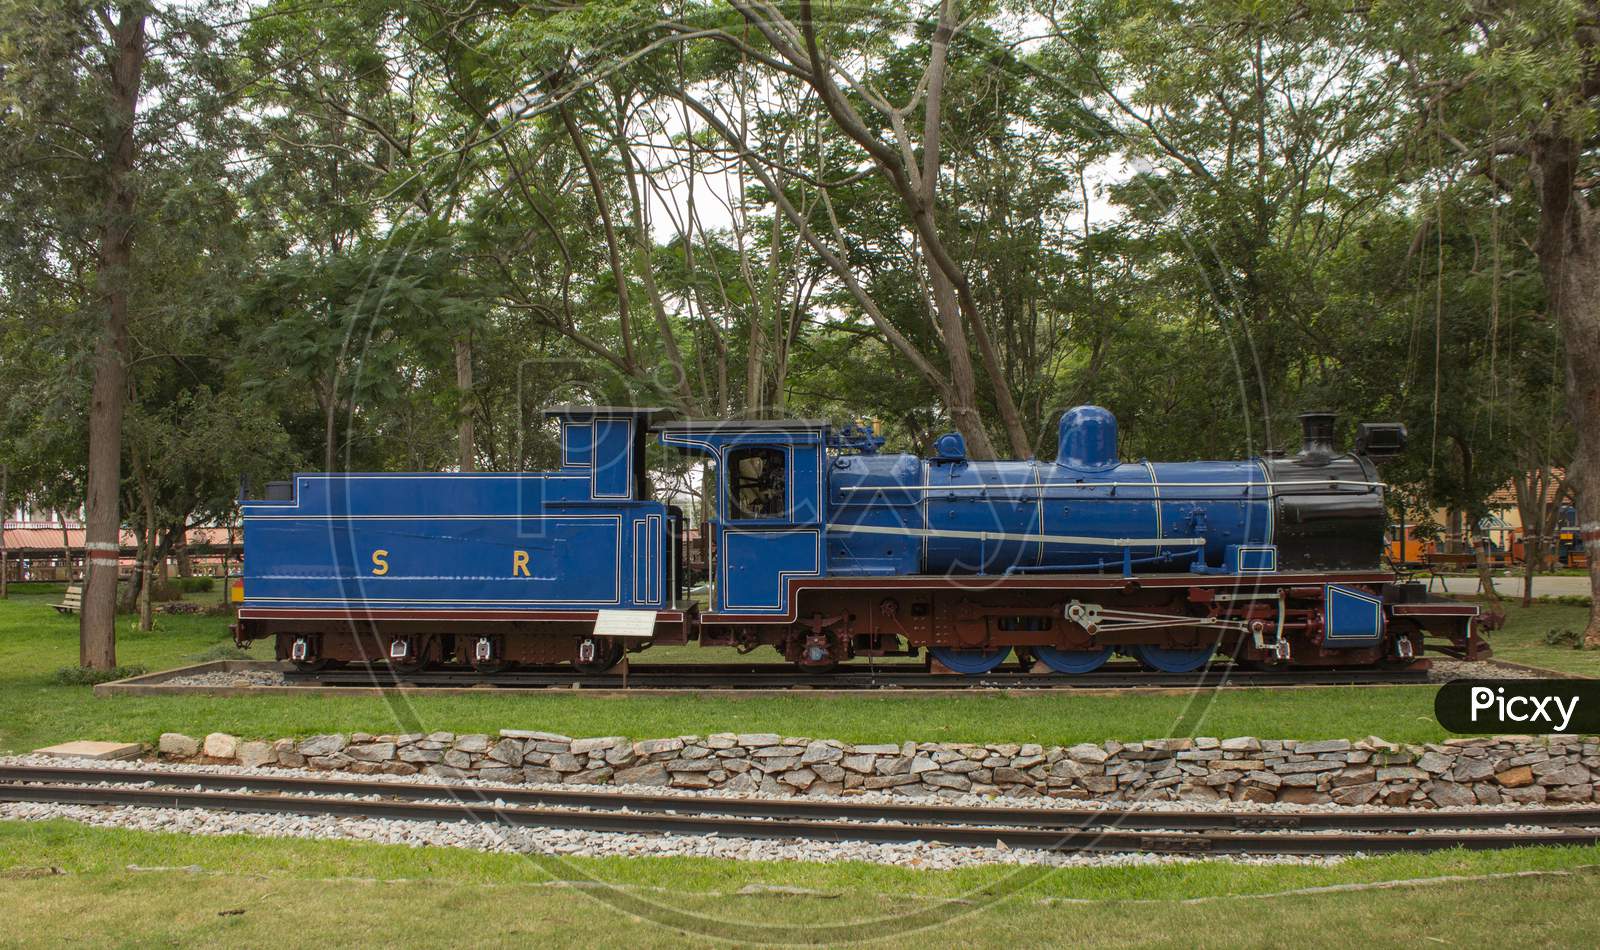 A beautiful Vintage Steam locomotive engine at Mysore/Karnataka/India.